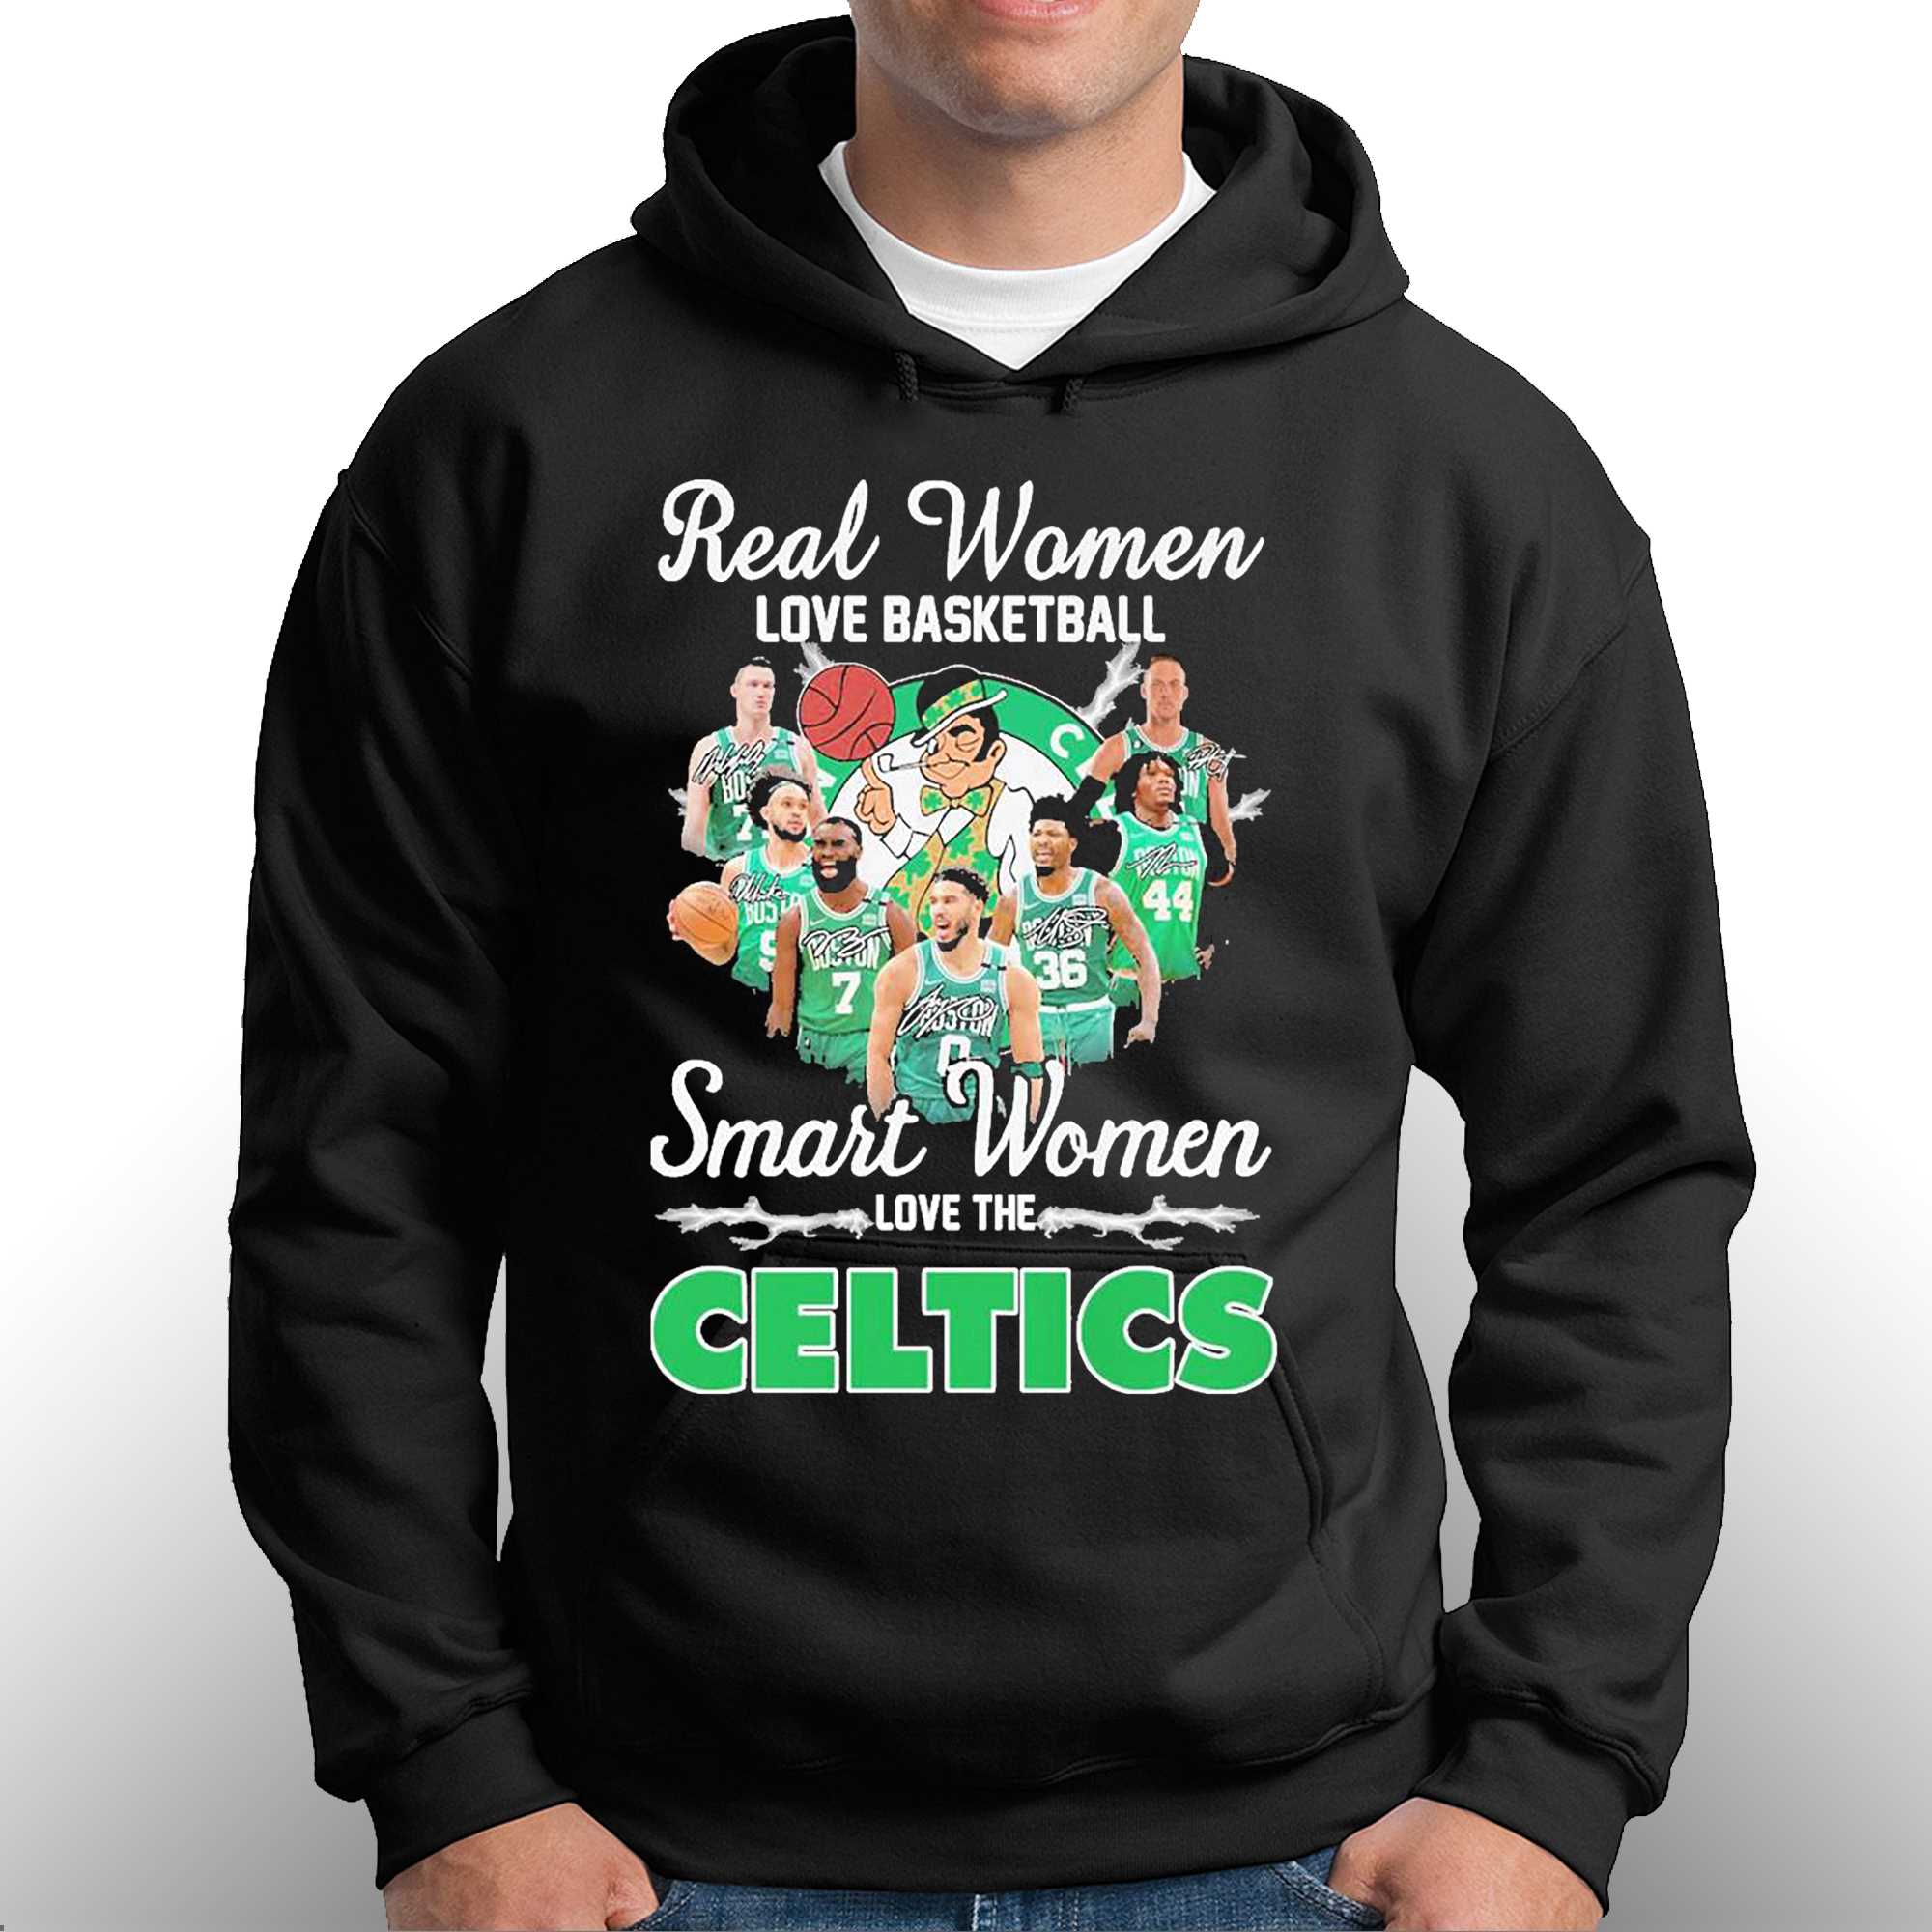 women celtics t shirt